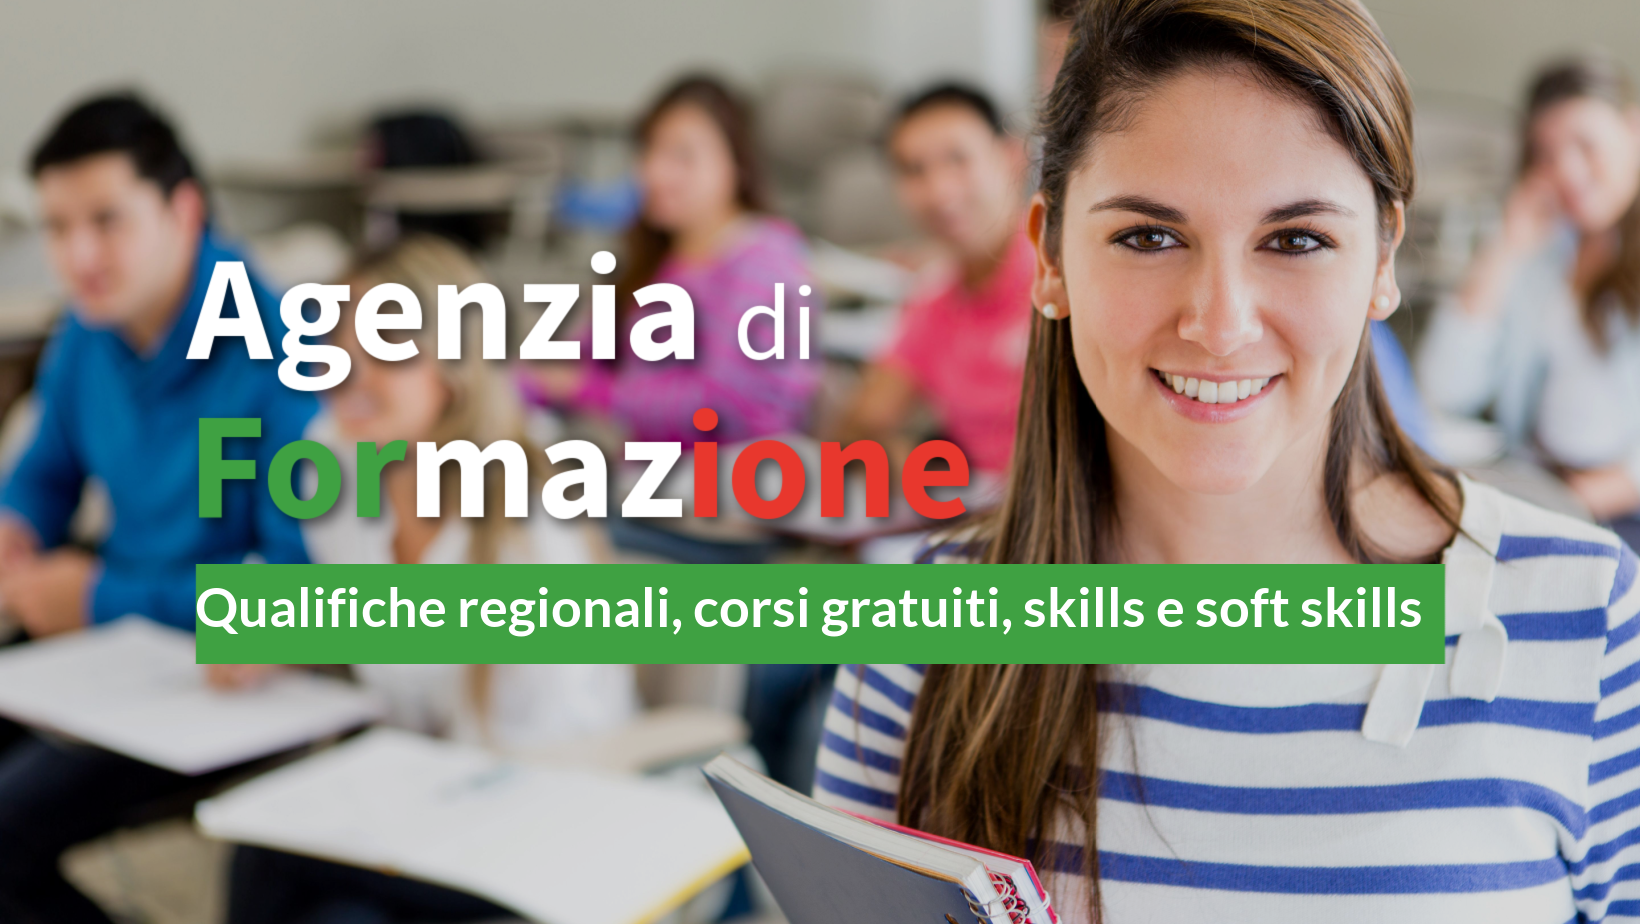 Agenzia di Formazione accreditata Regione Abruzzo | Avezzano